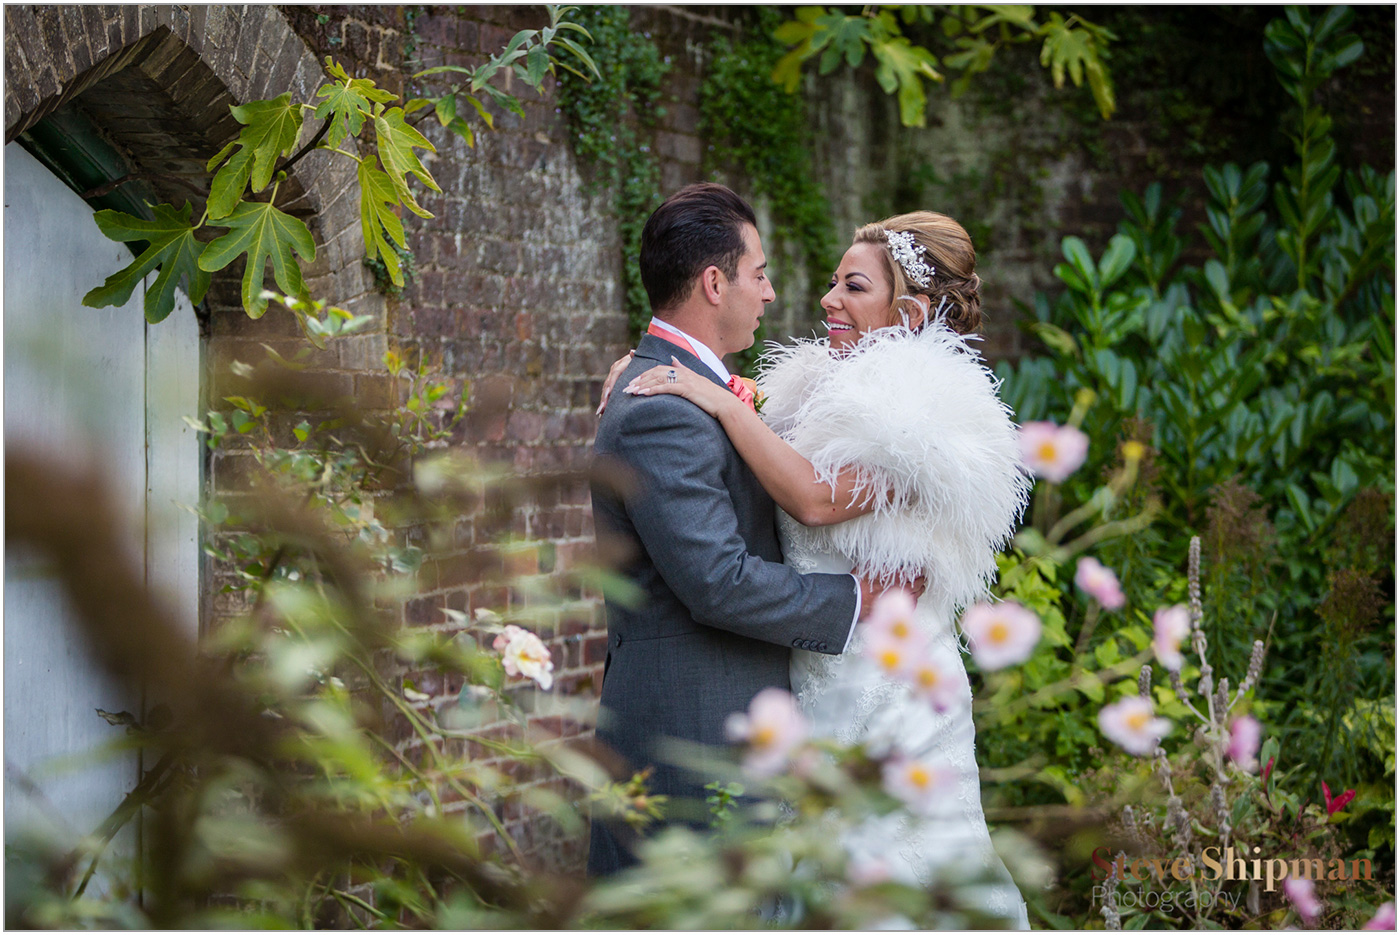 Outdoor Weddings at Shendish Manor | Gabriella and Carlos